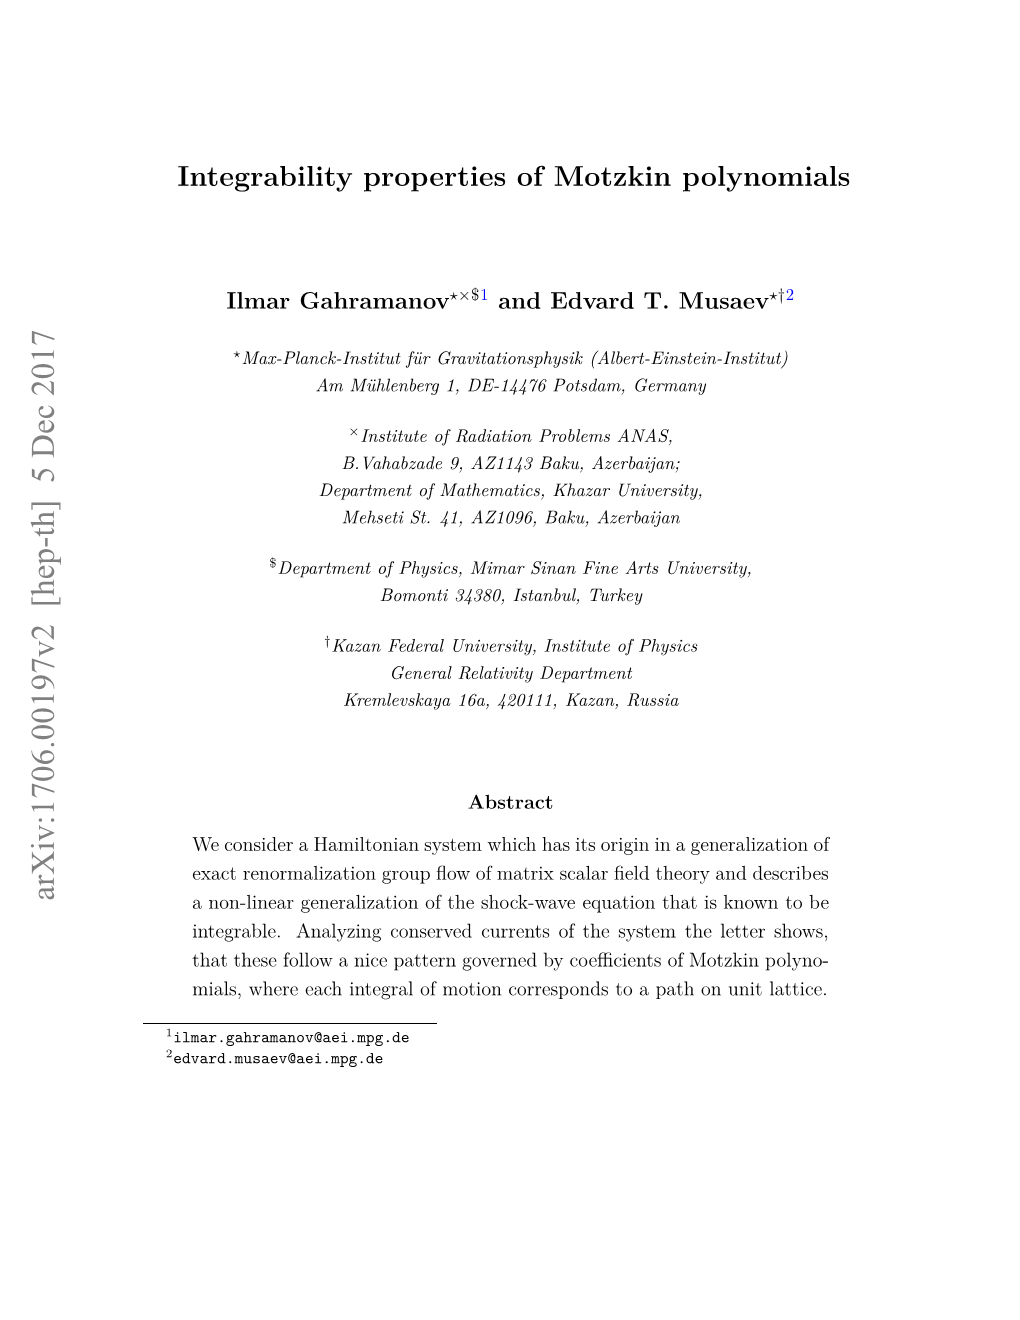 Integrability Properties of Motzkin Polynomials